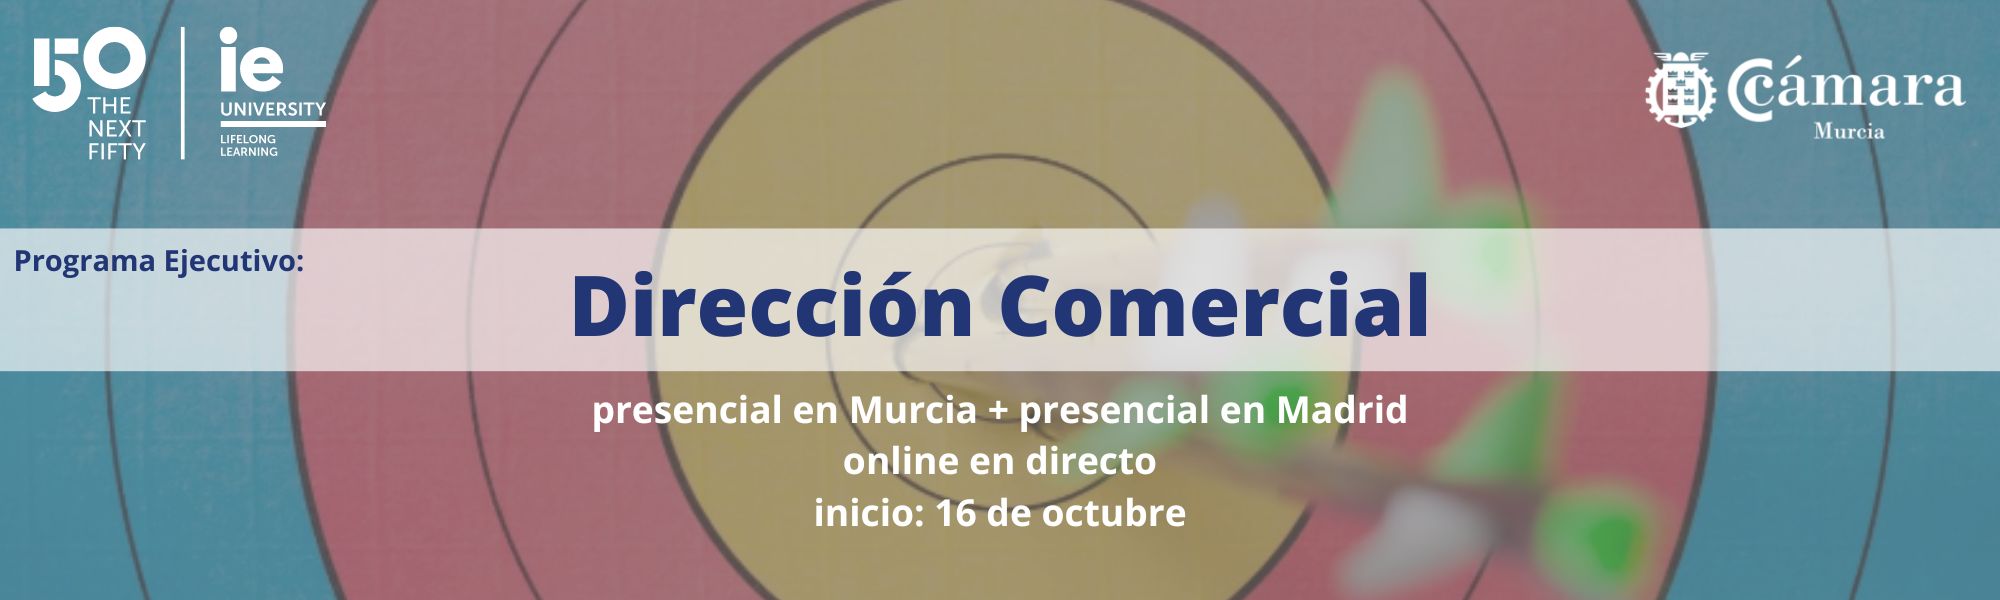 Dirección Comecial | Programa Ejecutivo | IE Business School | Cámara de Comercio de Murcia